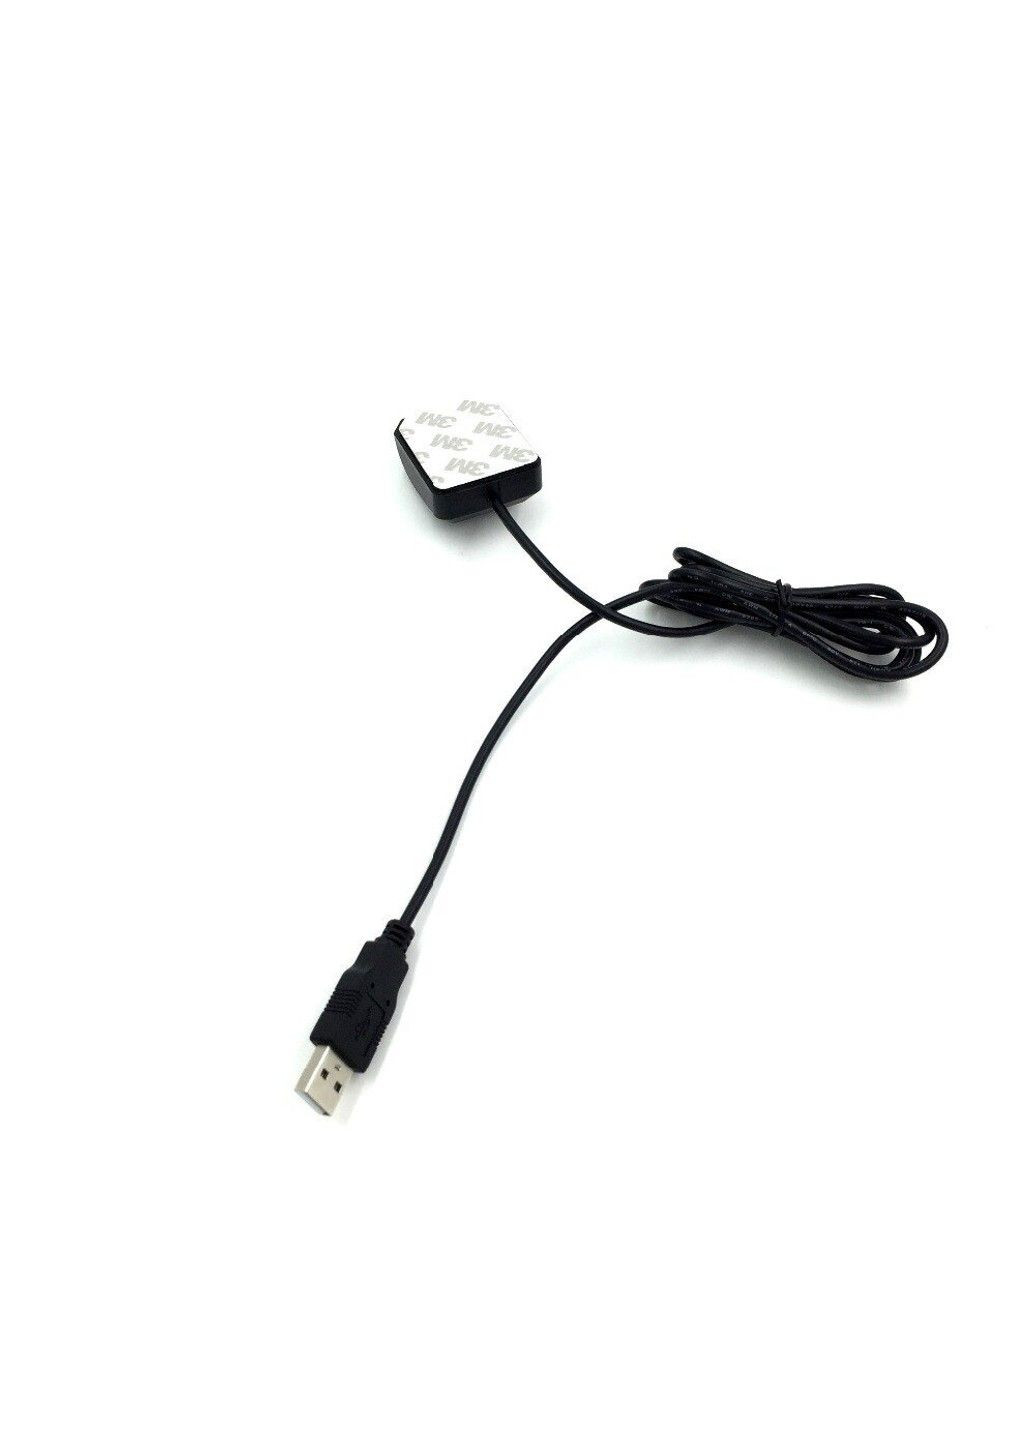 USB GPS приймач для ноутбука, комп'ютера G-MOUSE чіп 8 з виносним кабелем 2м та магнітним кріпленням U-blox (293061843)